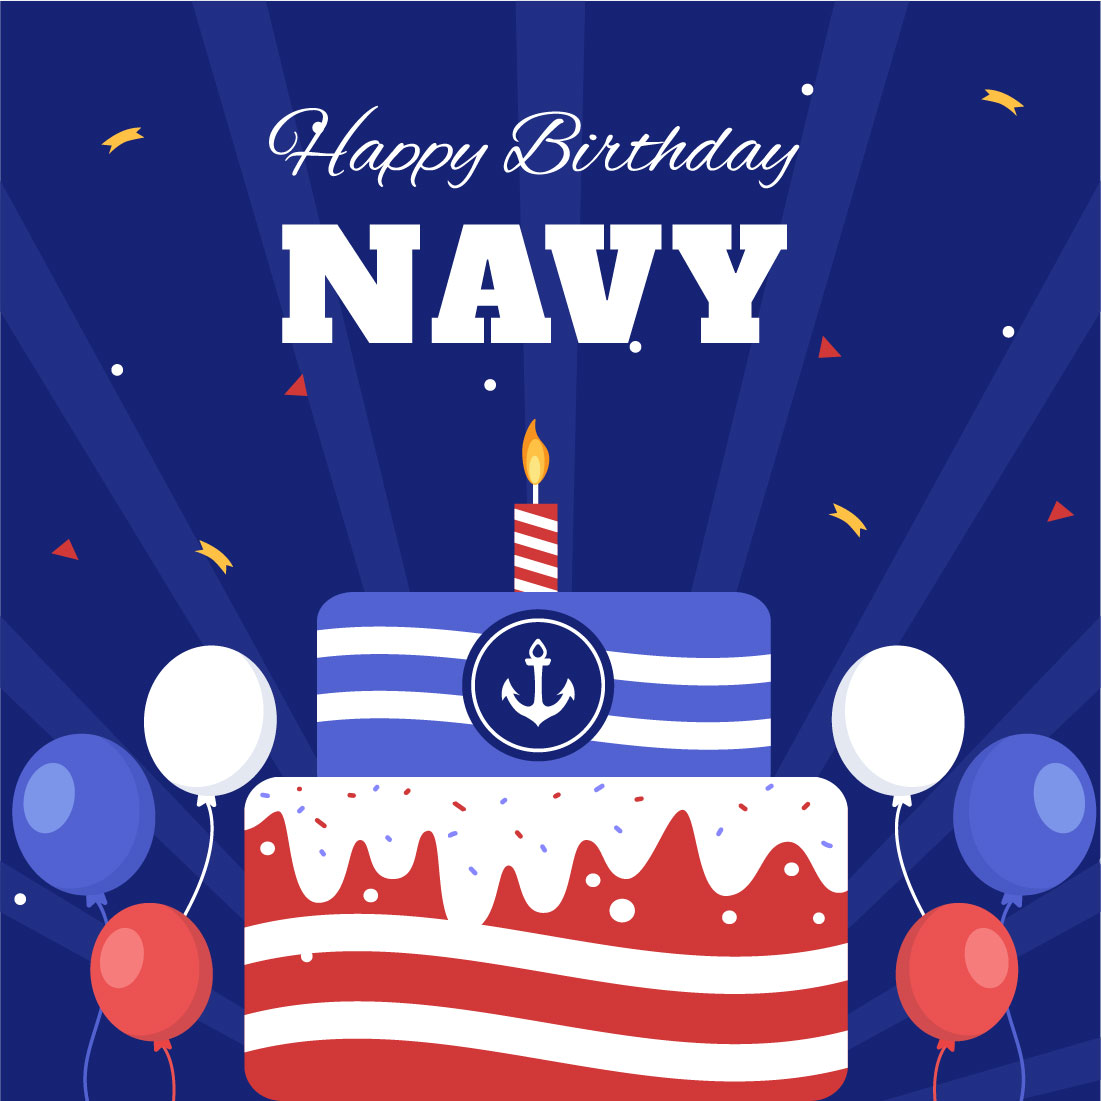 13 U.S. Navy Birthday Illustration Cover Image.